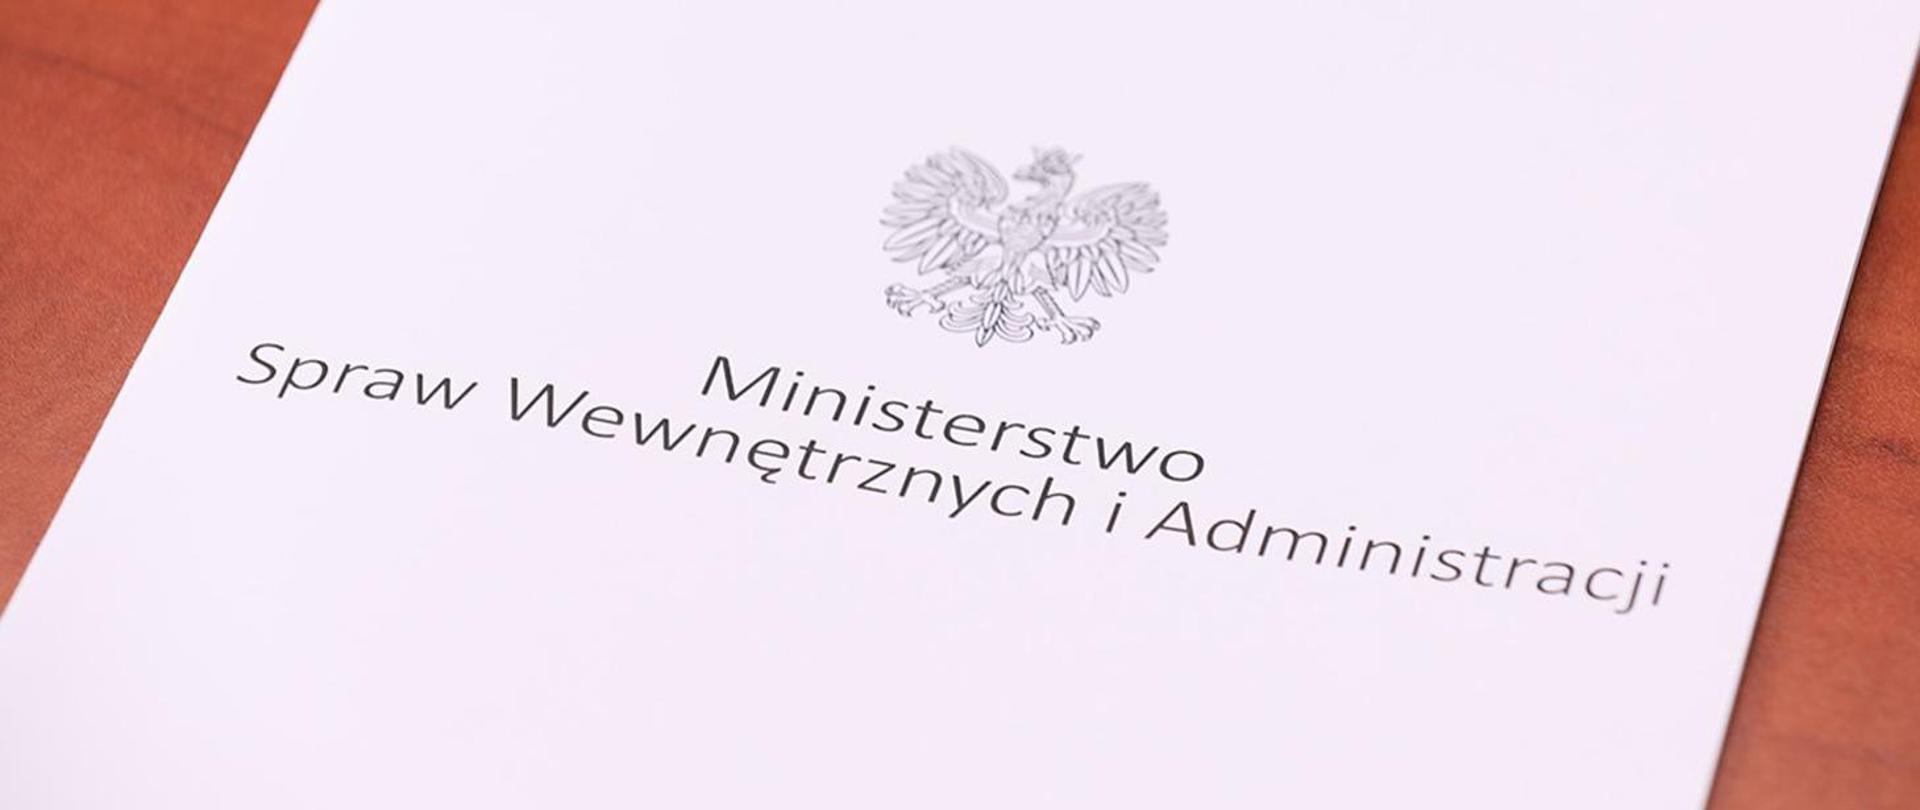 Zdjęcie przedstawia leżącą teczkę z napisem "Ministerstwo Spraw Wewnętrznych i Administracji" i orłem.